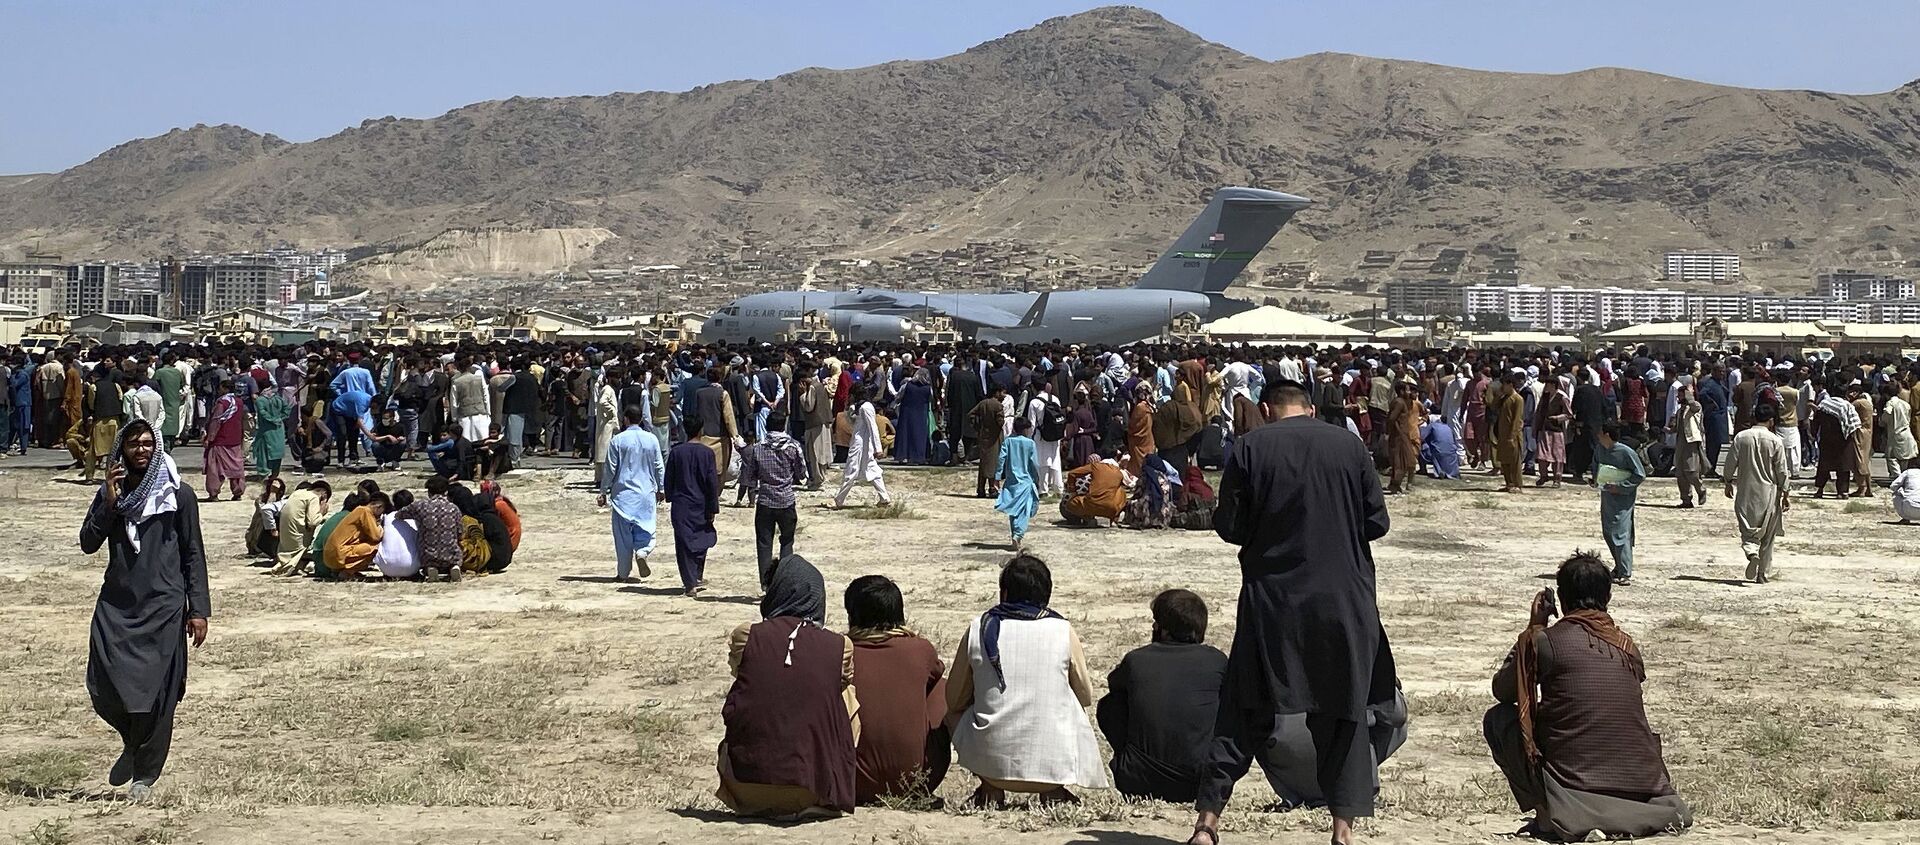 Hàng trăm người tập trung gần một chiếc máy bay vận tải C-17 của Không quân Hoa Kỳ ở vành đai sân bay quốc tế ở Kabul, Afghanistan, Thứ Hai, ngày 16 tháng 8 năm 2021 - Sputnik Việt Nam, 1920, 19.08.2021